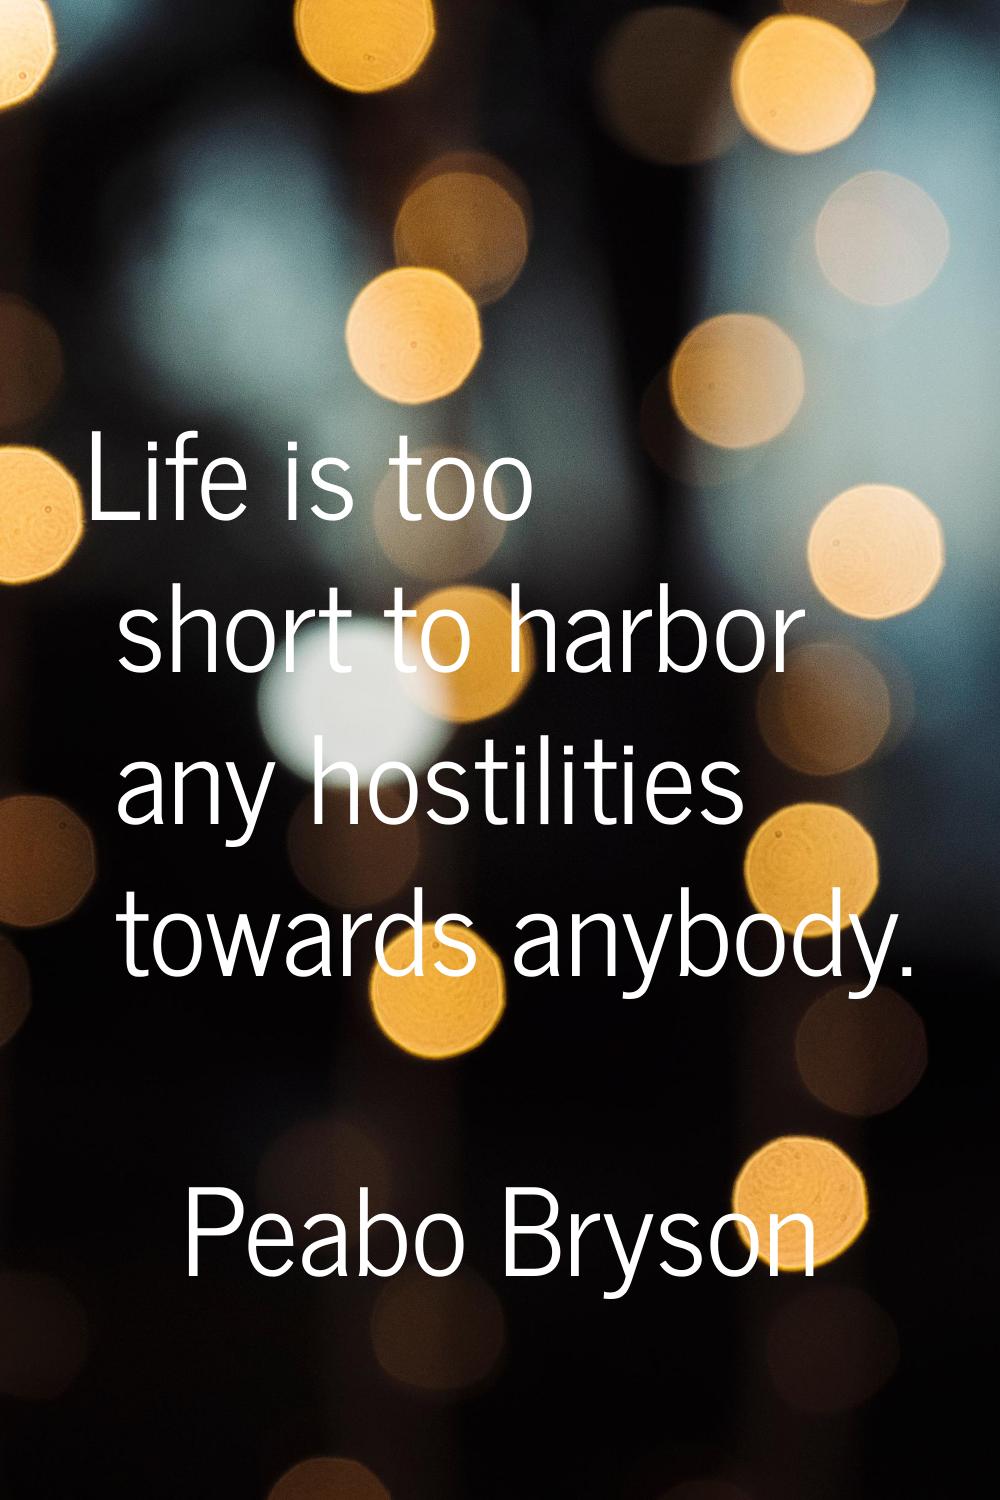 Life is too short to harbor any hostilities towards anybody.